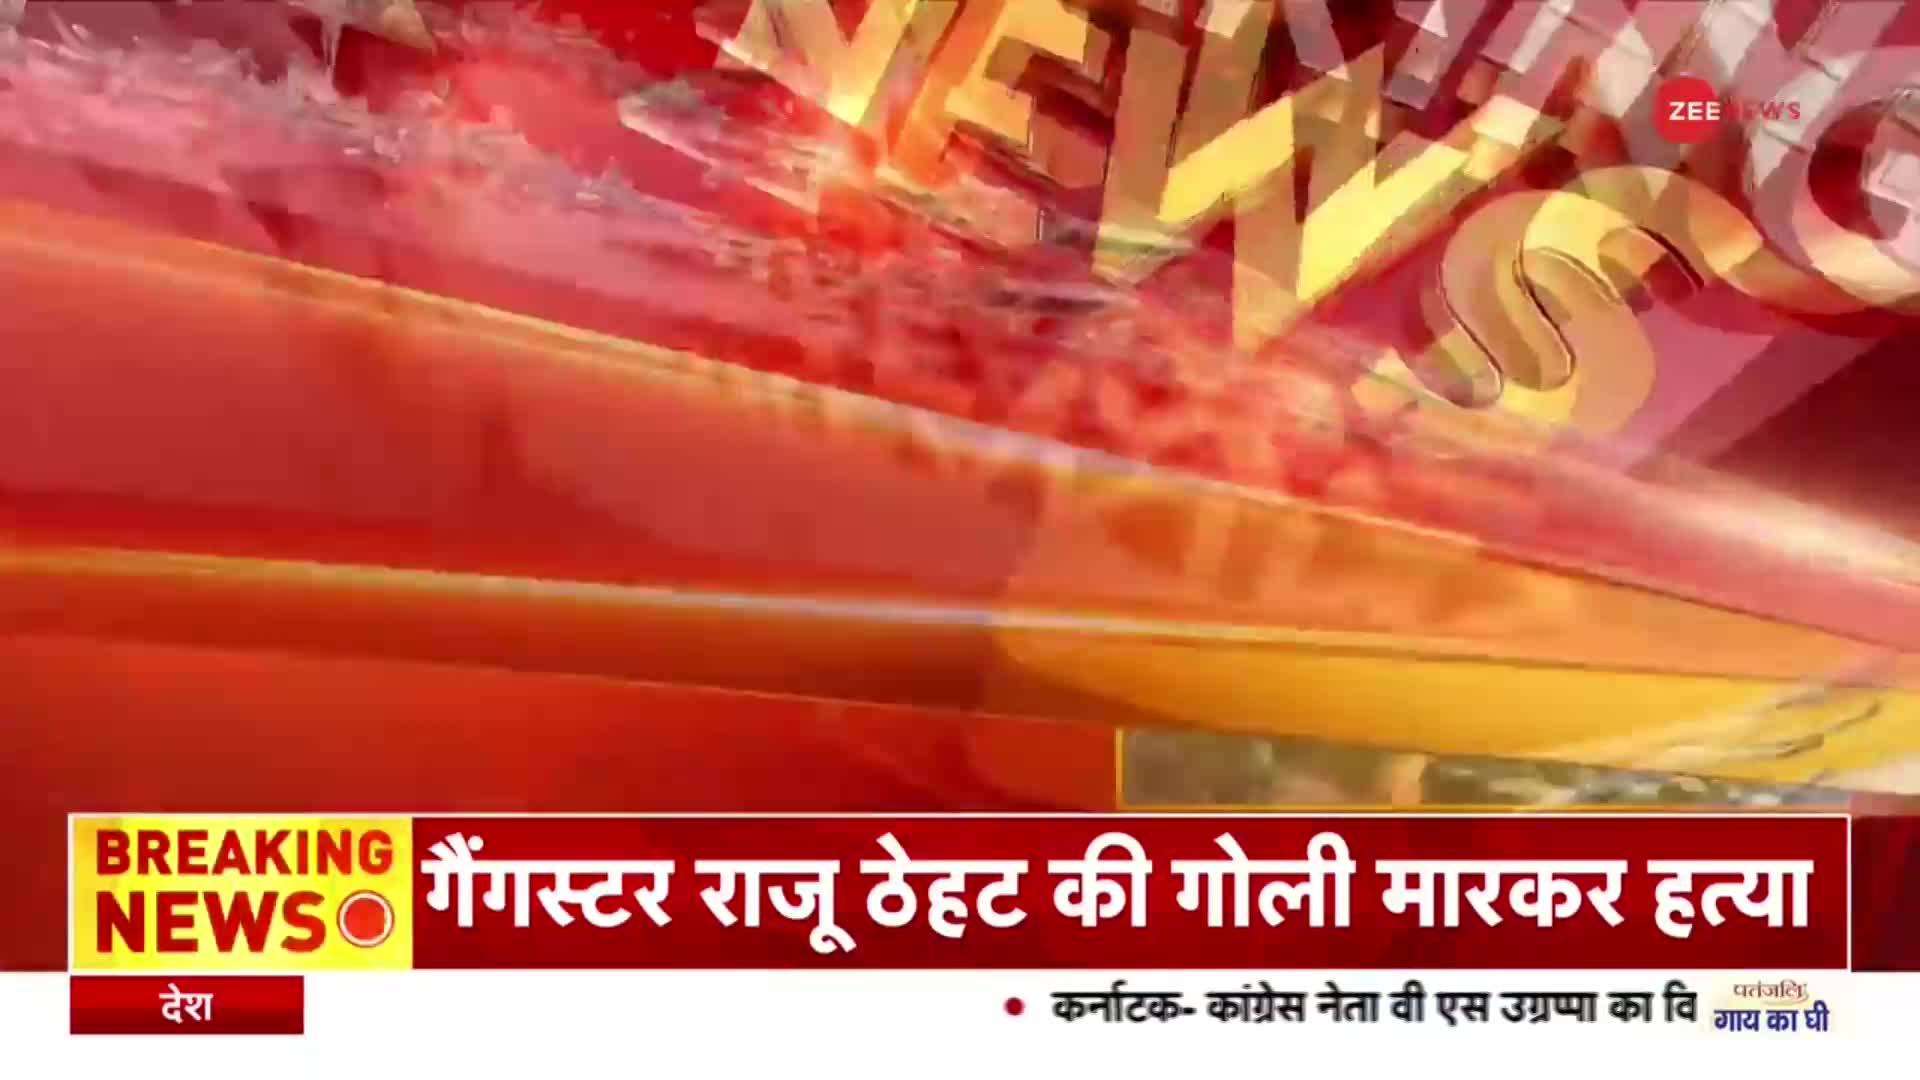 Rajasthan News: सीकर में गैंगवार, गैंगस्टर राजू ठेठ की गोली मारकर हत्या | Latest Hindi News